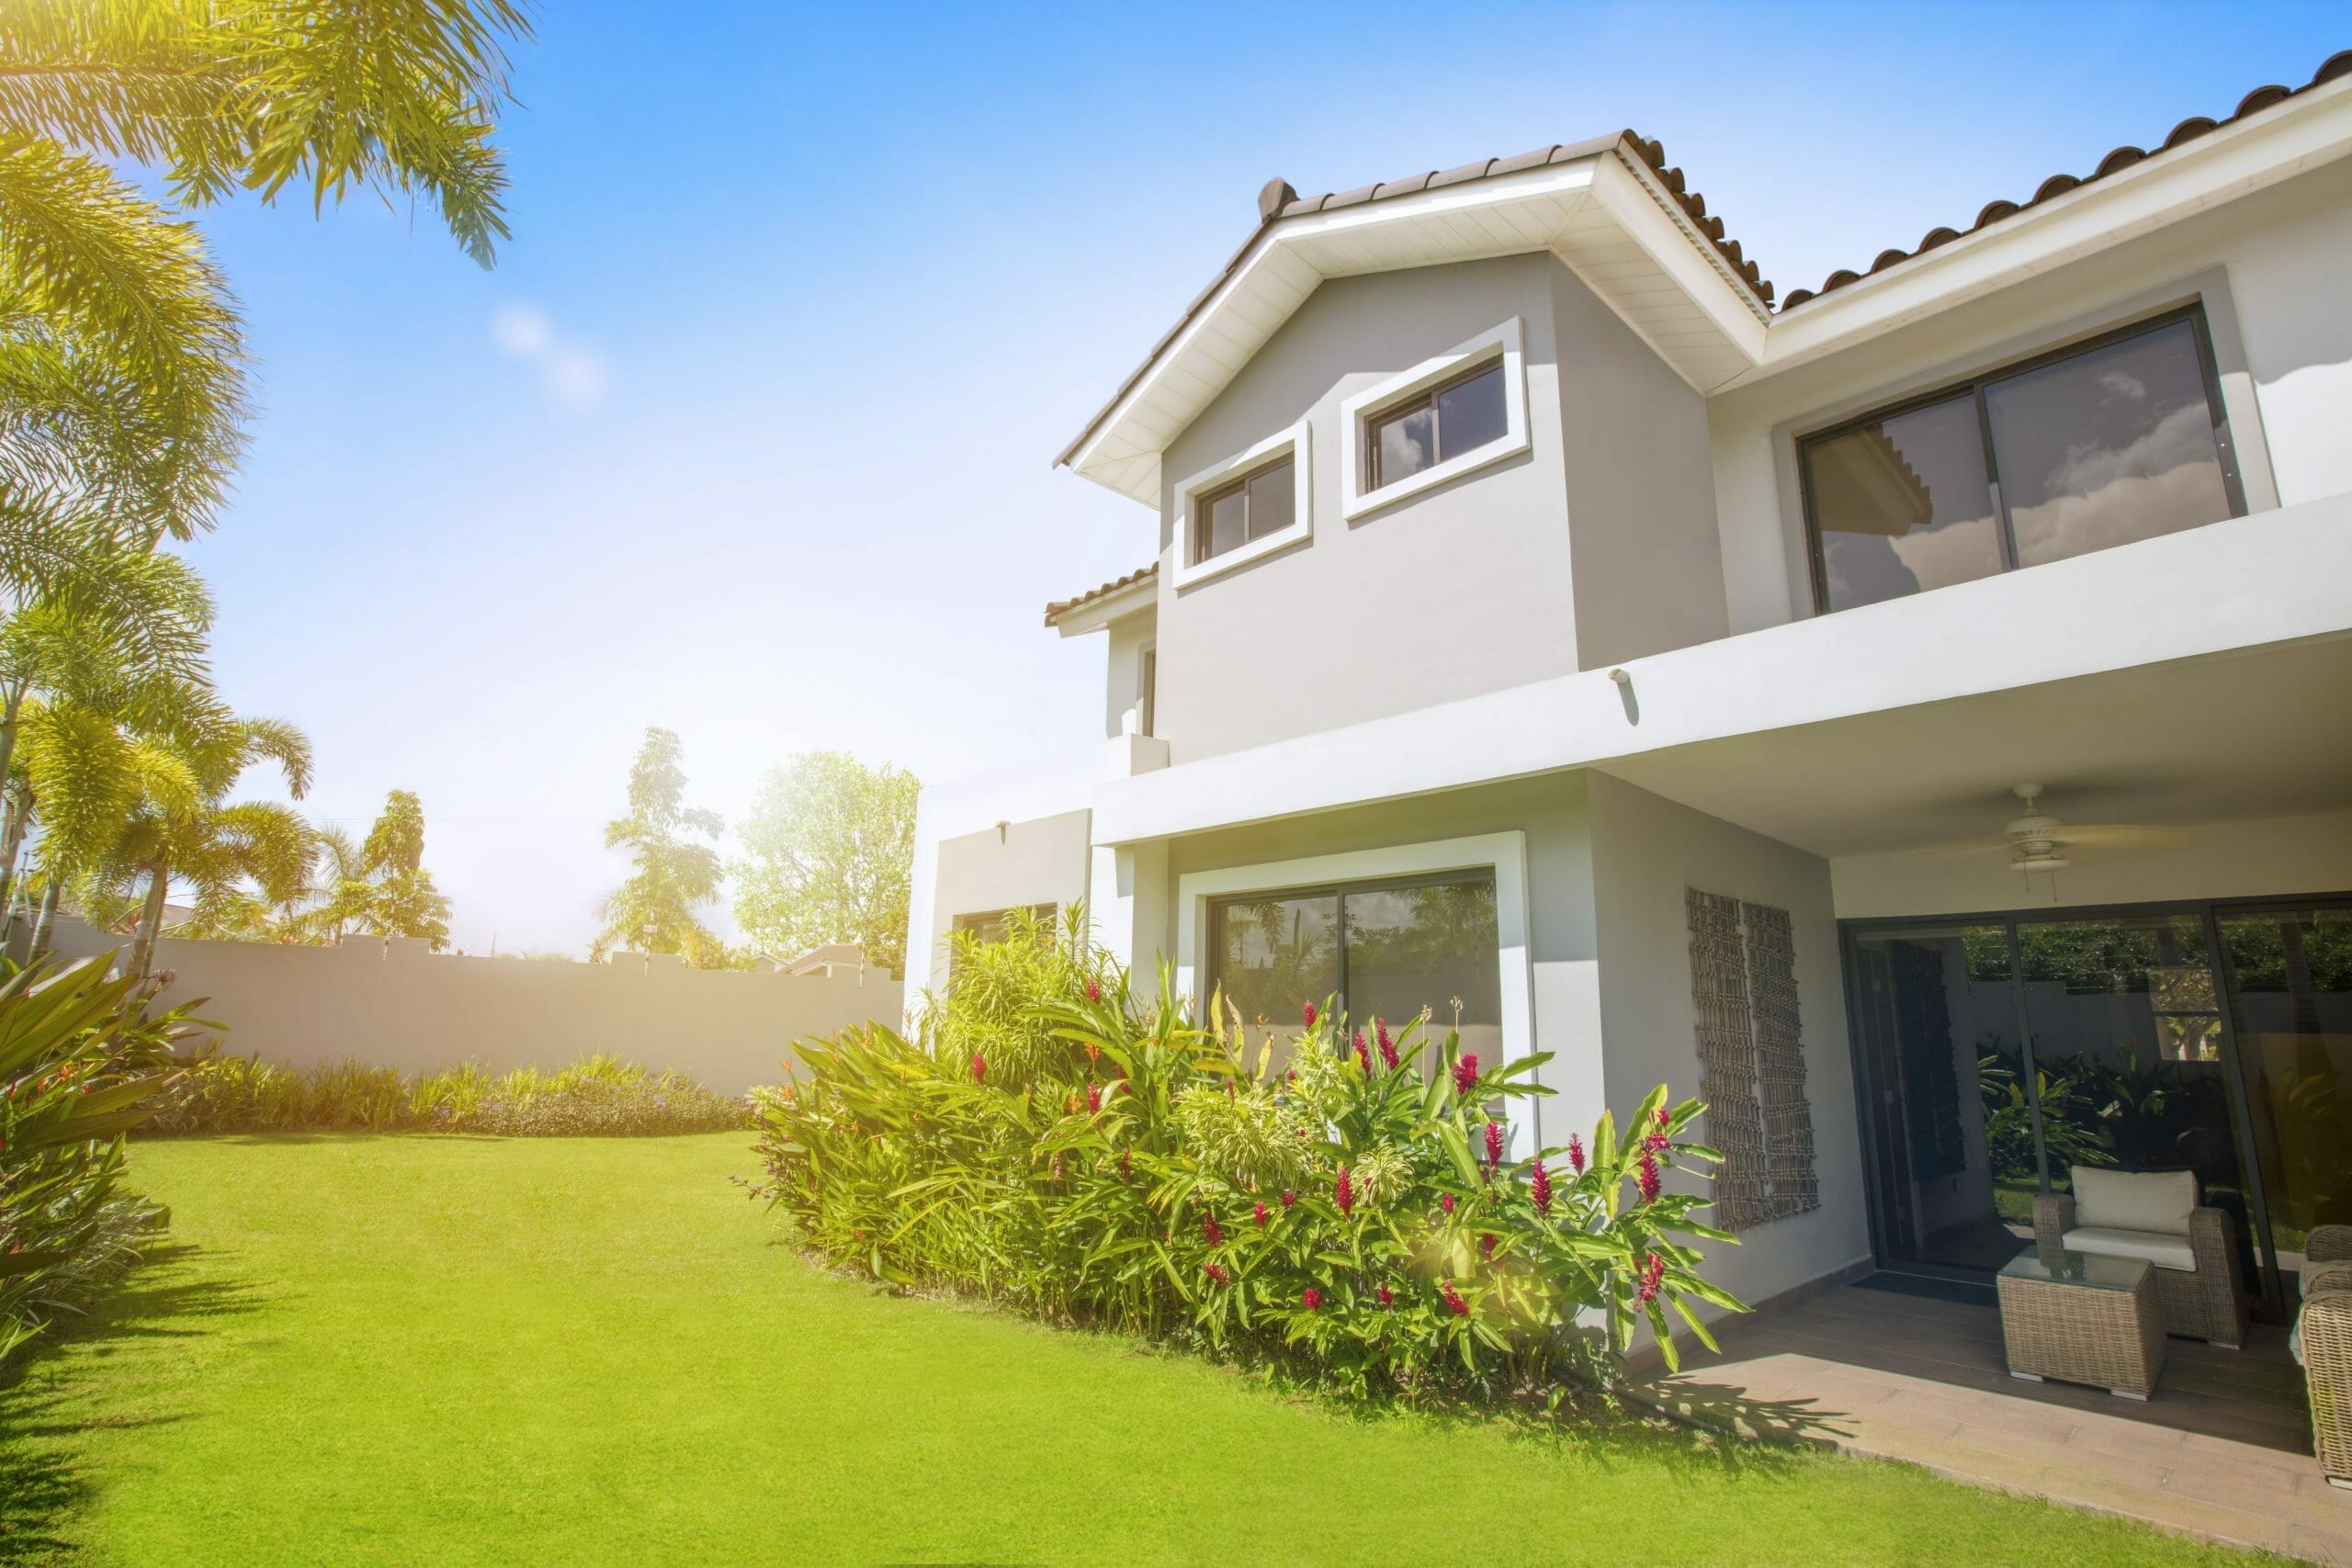 TIPS para alquilar o vender tu casa MUCHO más rápido